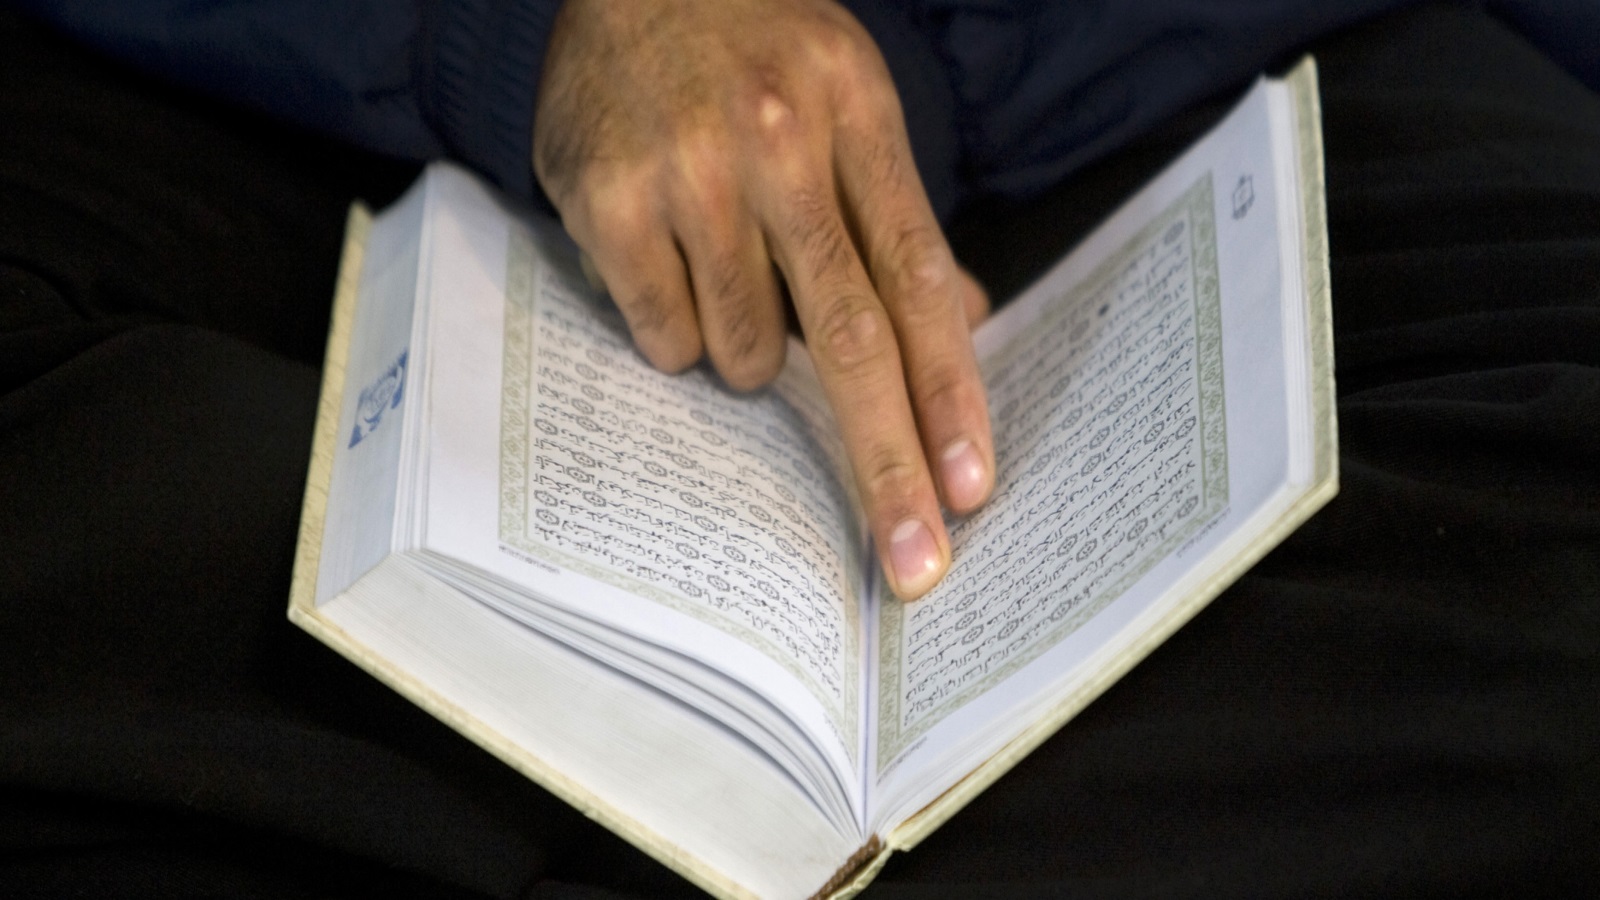 بالنسبة لإعجاز النص القرآني فقد أخرجته الدراسة من إطاره التقليدي من خلال الكشف عن روابط داخلية بين أجزاء النص القرآني تتيح إعادة قراءته مرارا وتكرارا